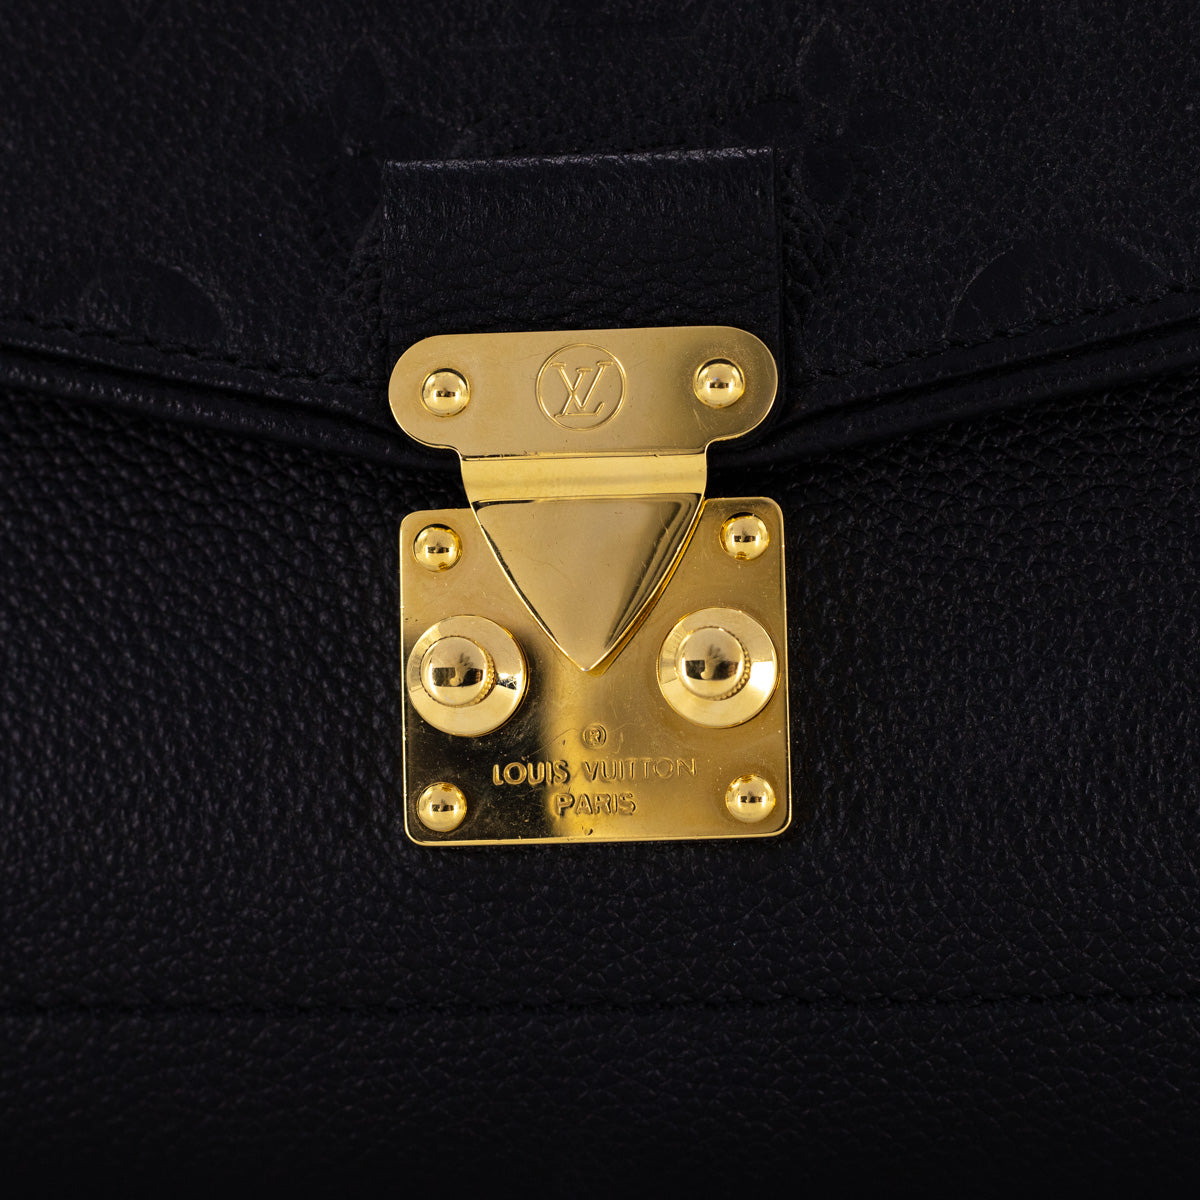 Comme des Garçons x Louis Vuitton Black Monogram Empreinte Bag with Holes  PM QJBIYO1DKF000